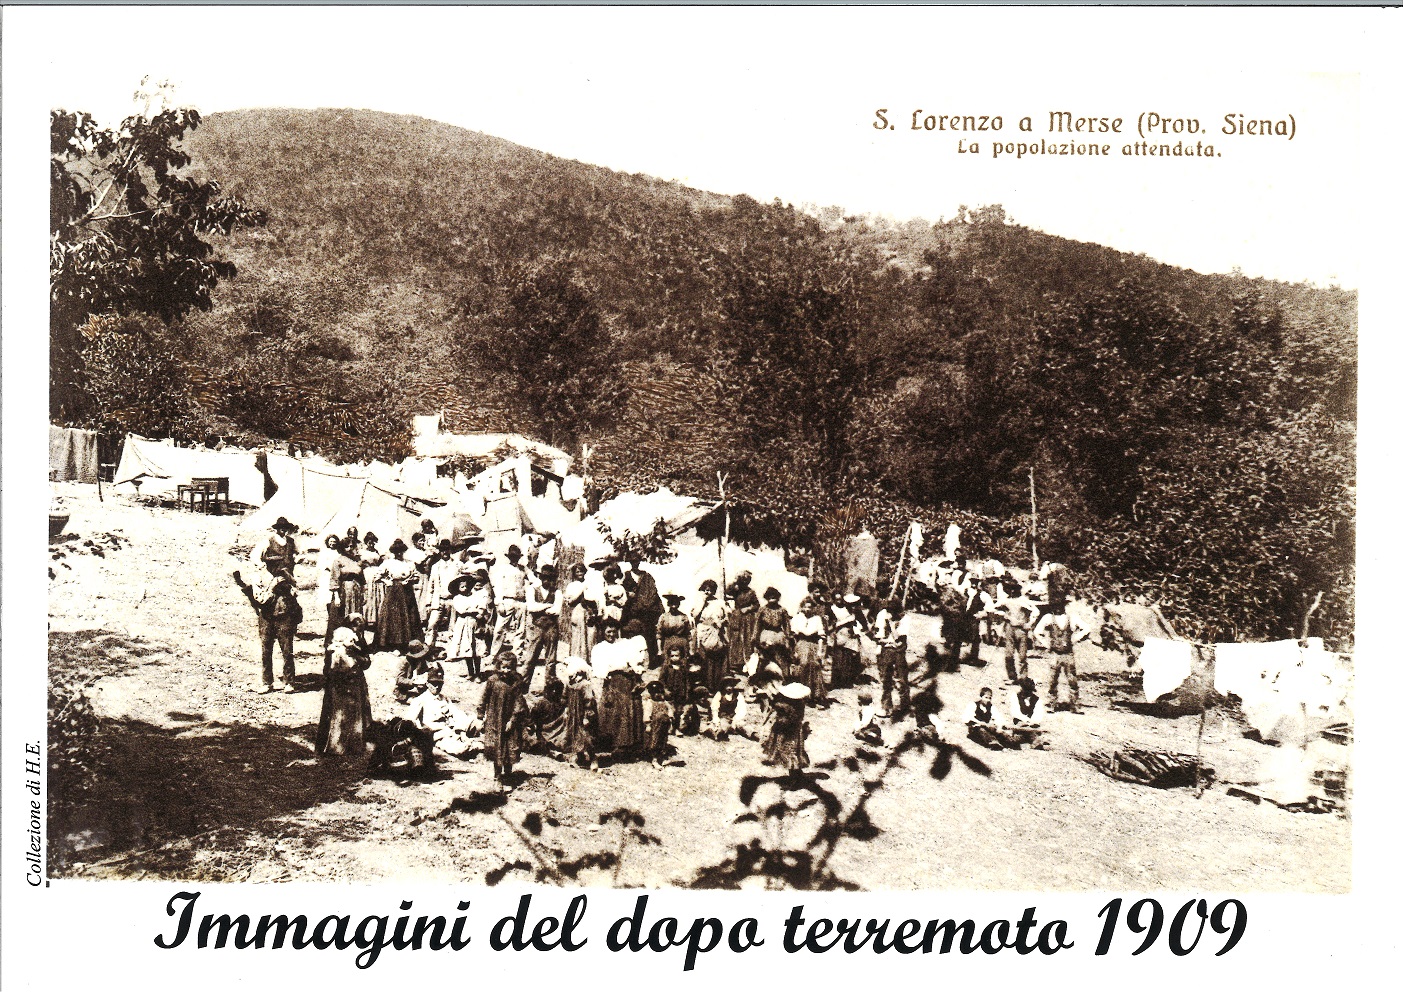 1909 Foto Popolazione attendata